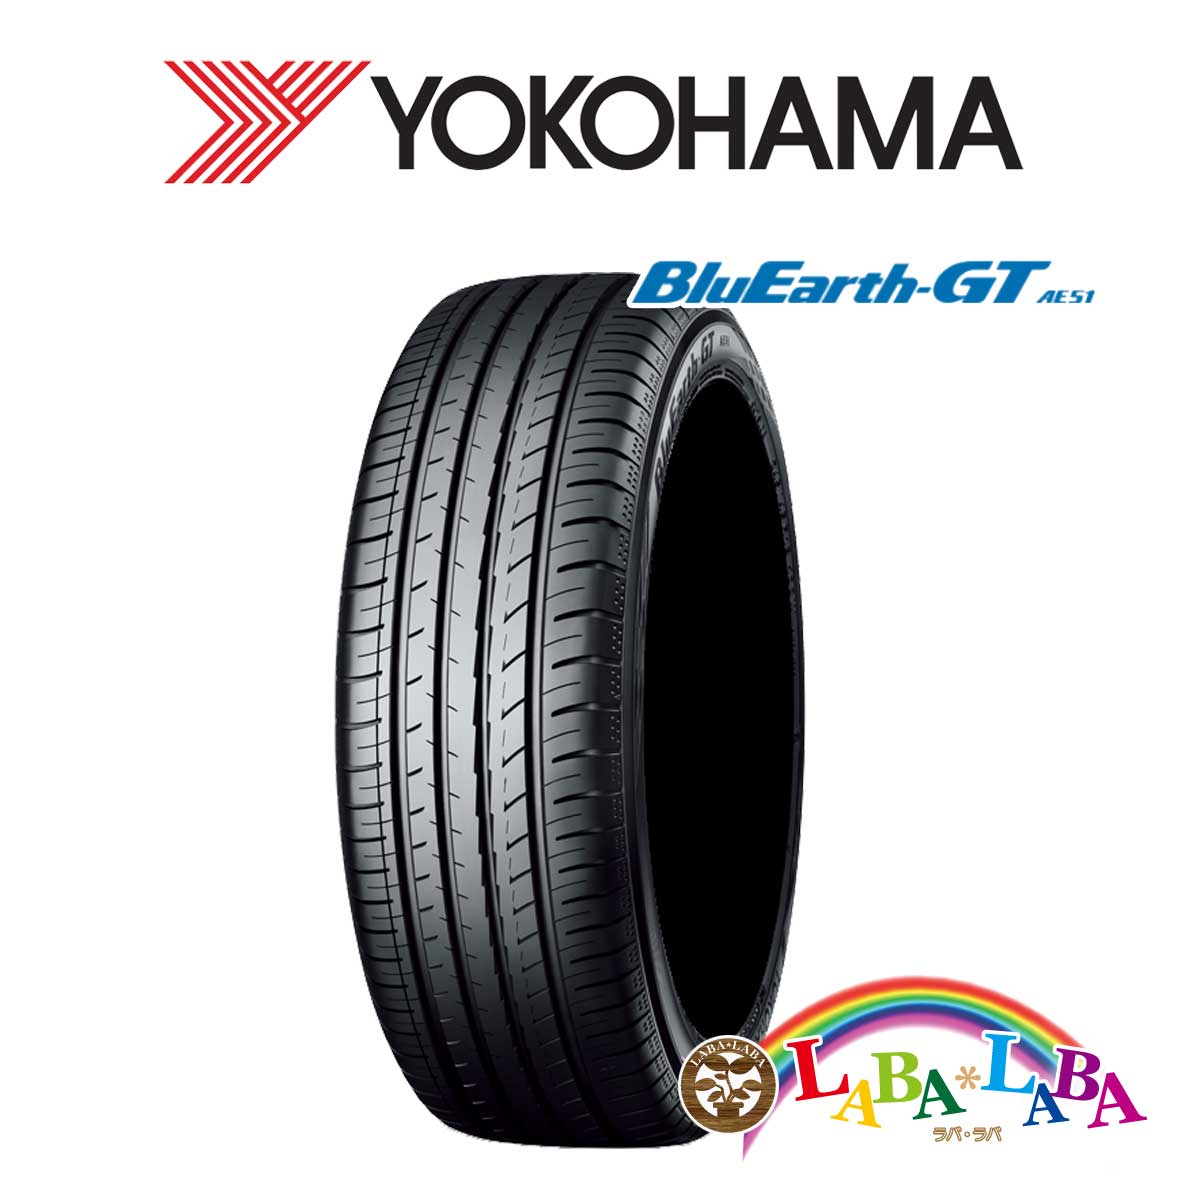 ２本以上送料無料 国産タイヤ サマータイヤ 新品 タイヤのみ YOKOHAMA ヨコハマ AE51 35R19 全国組立設置無料 88W ブルーアース XL 225 70％OFFアウトレット BluEarth-GT